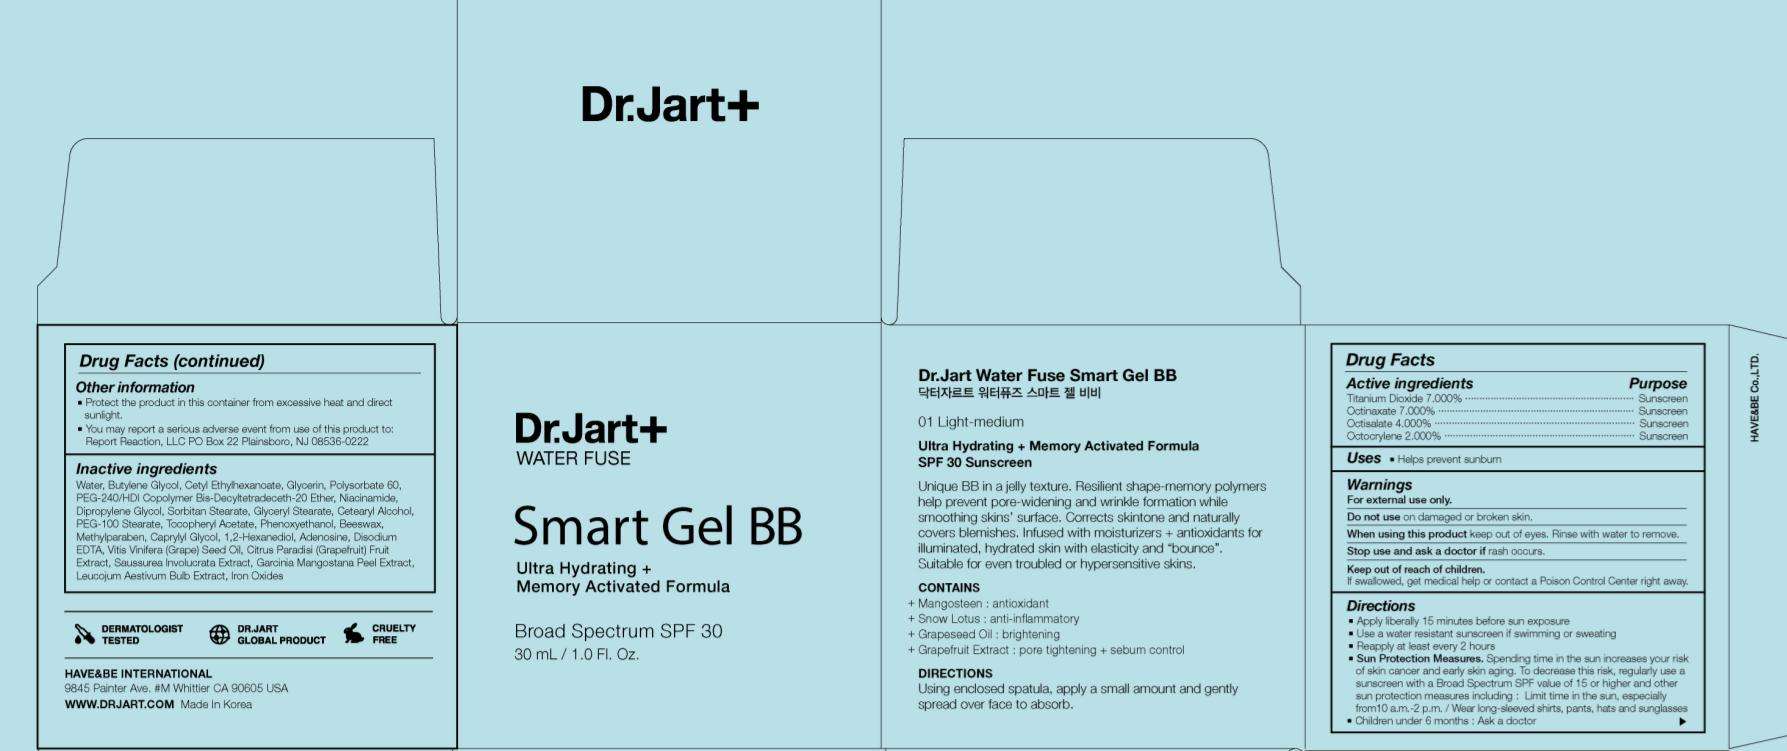 Dr. Jart Smart BB 01